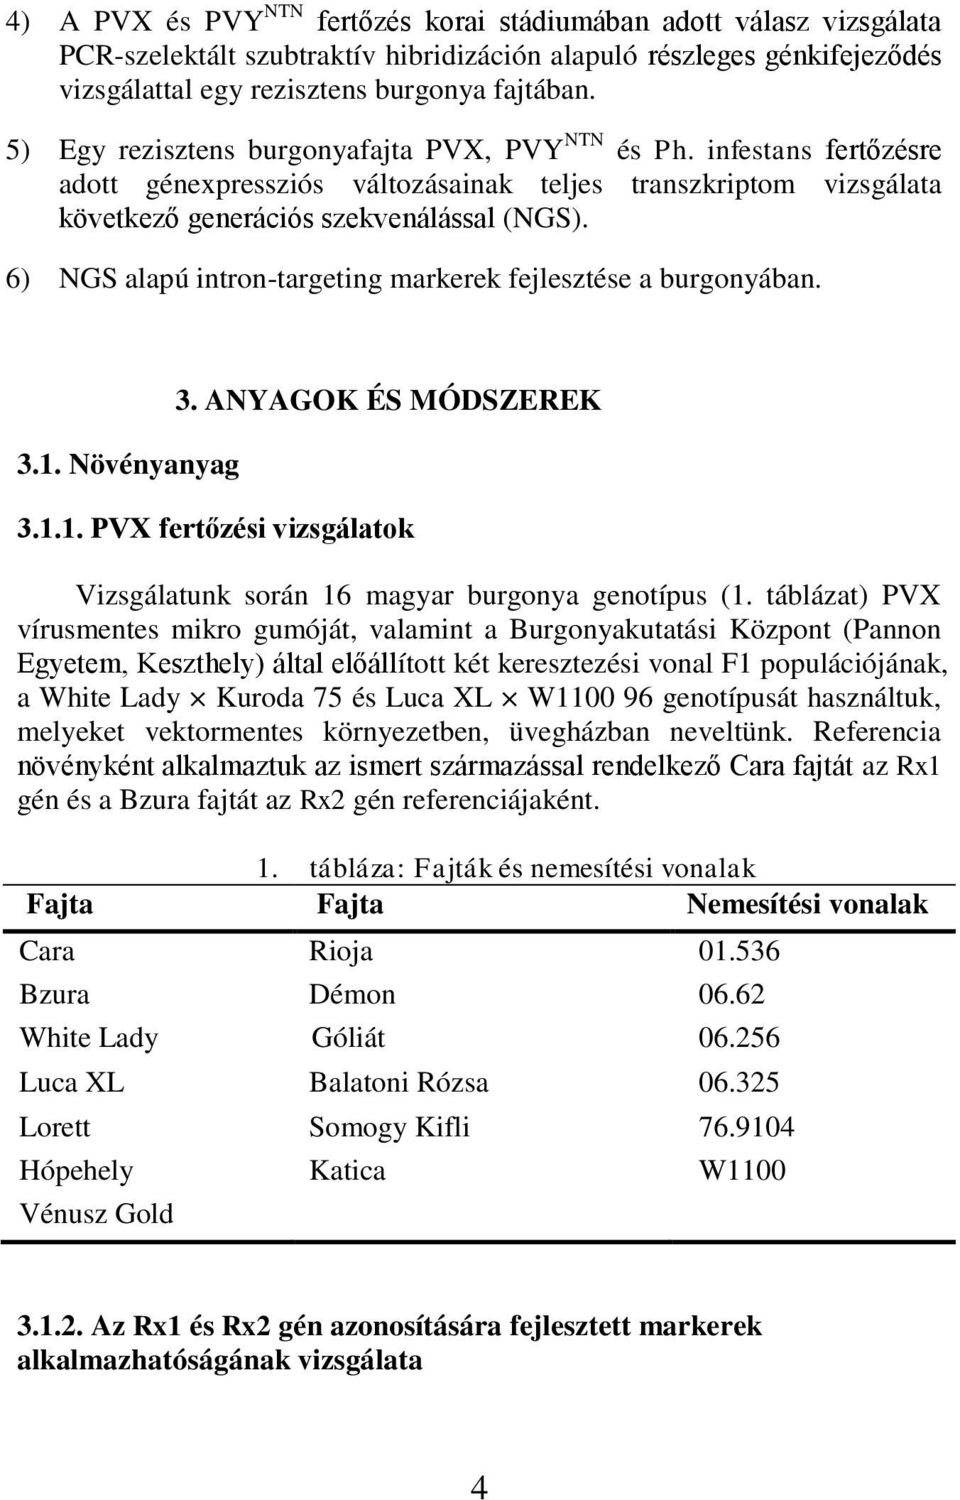 6) NGS alapú intron-targeting markerek fejlesztése a burgonyában. 3.1. Növényanyag 3. ANYAGOK ÉS MÓDSZEREK 3.1.1. PVX fertőzési vizsgálatok Vizsgálatunk során 16 magyar burgonya genotípus (1.